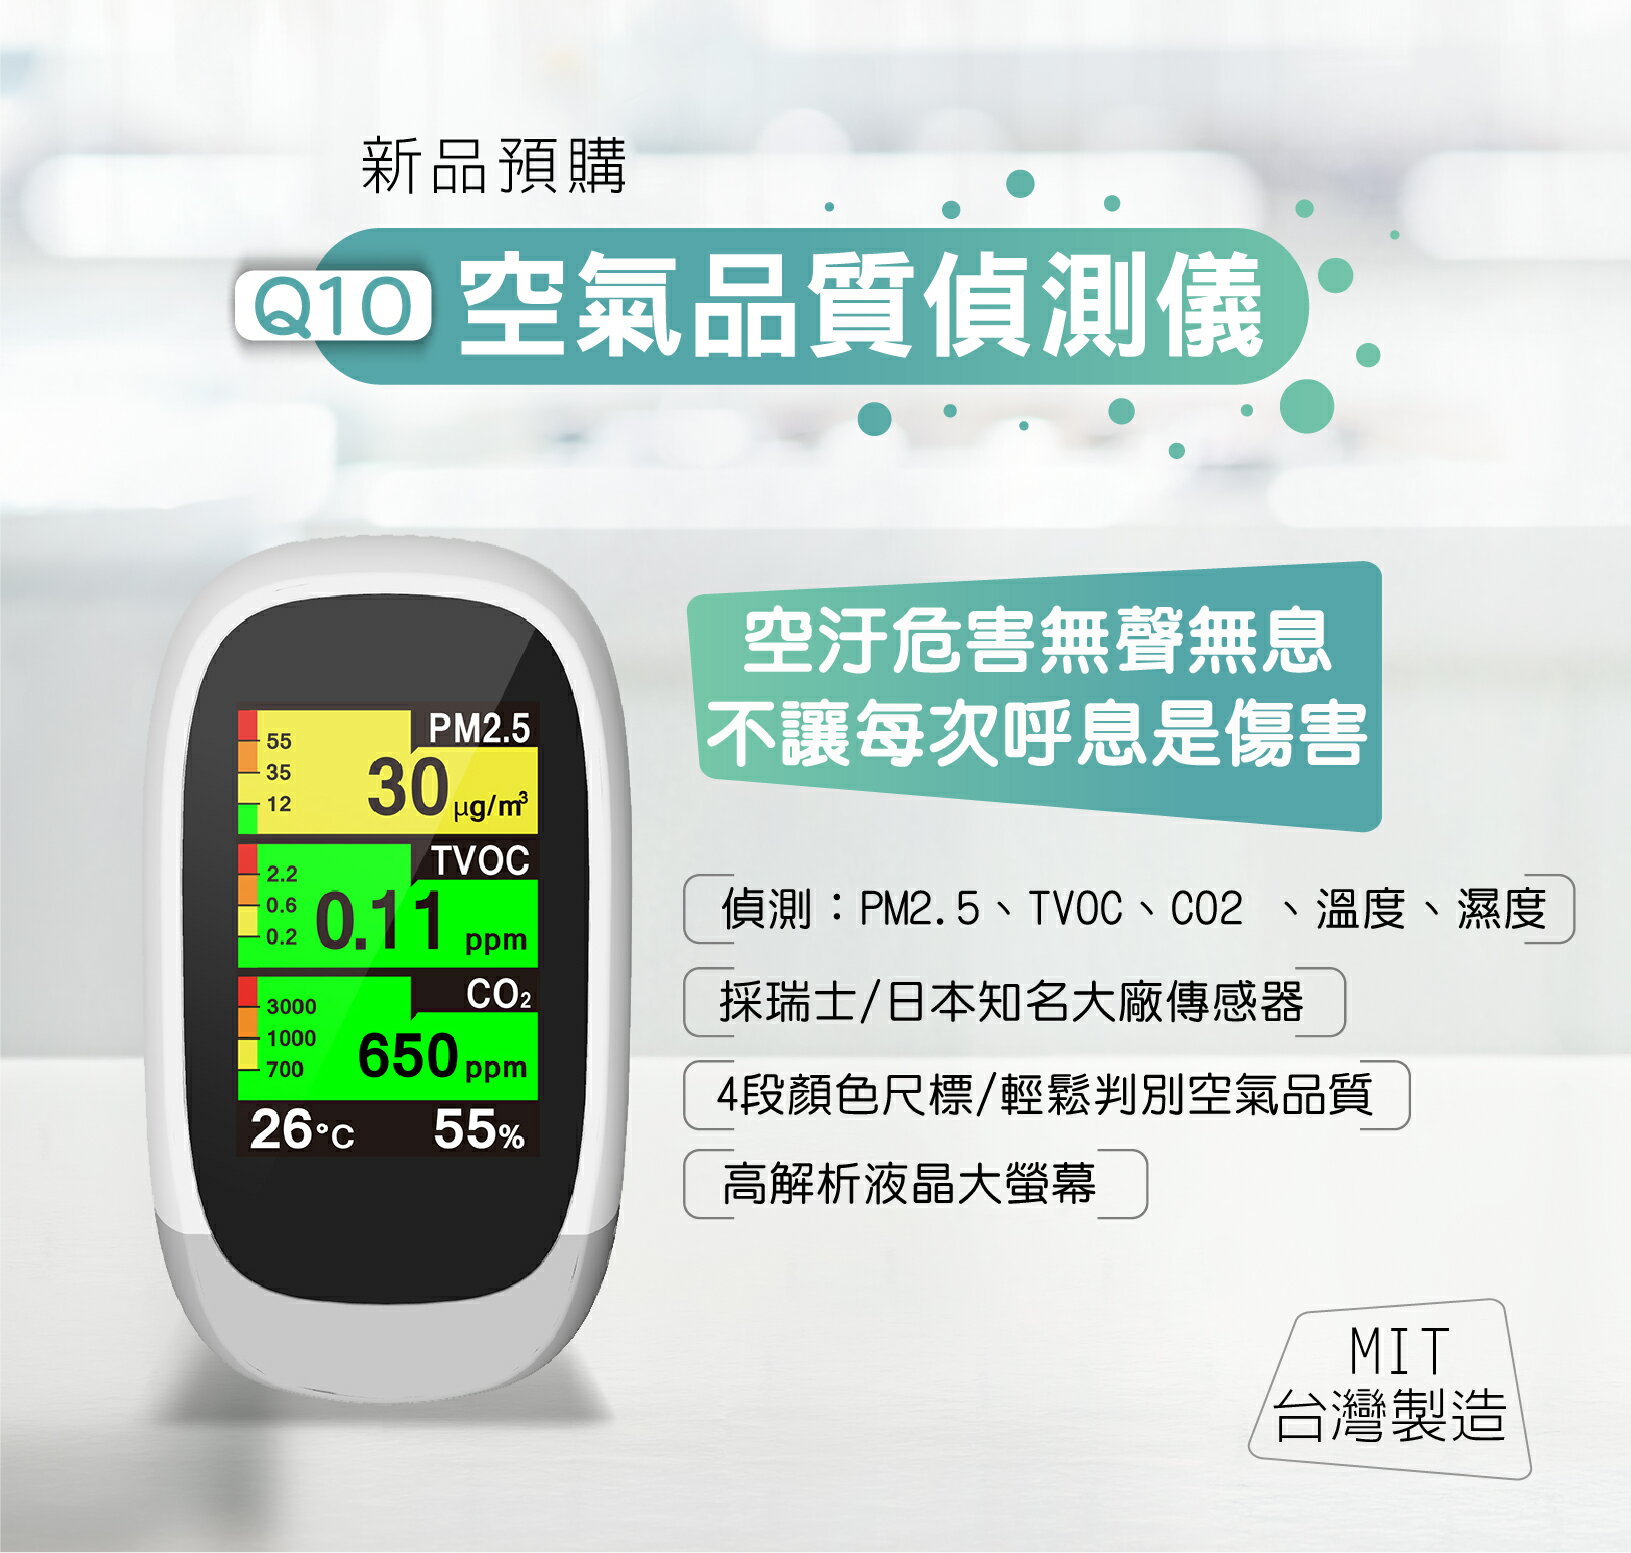 Q10 空氣品質偵測儀 品質偵測器 PM2.5偵測 TVOC CO2 溫濕度